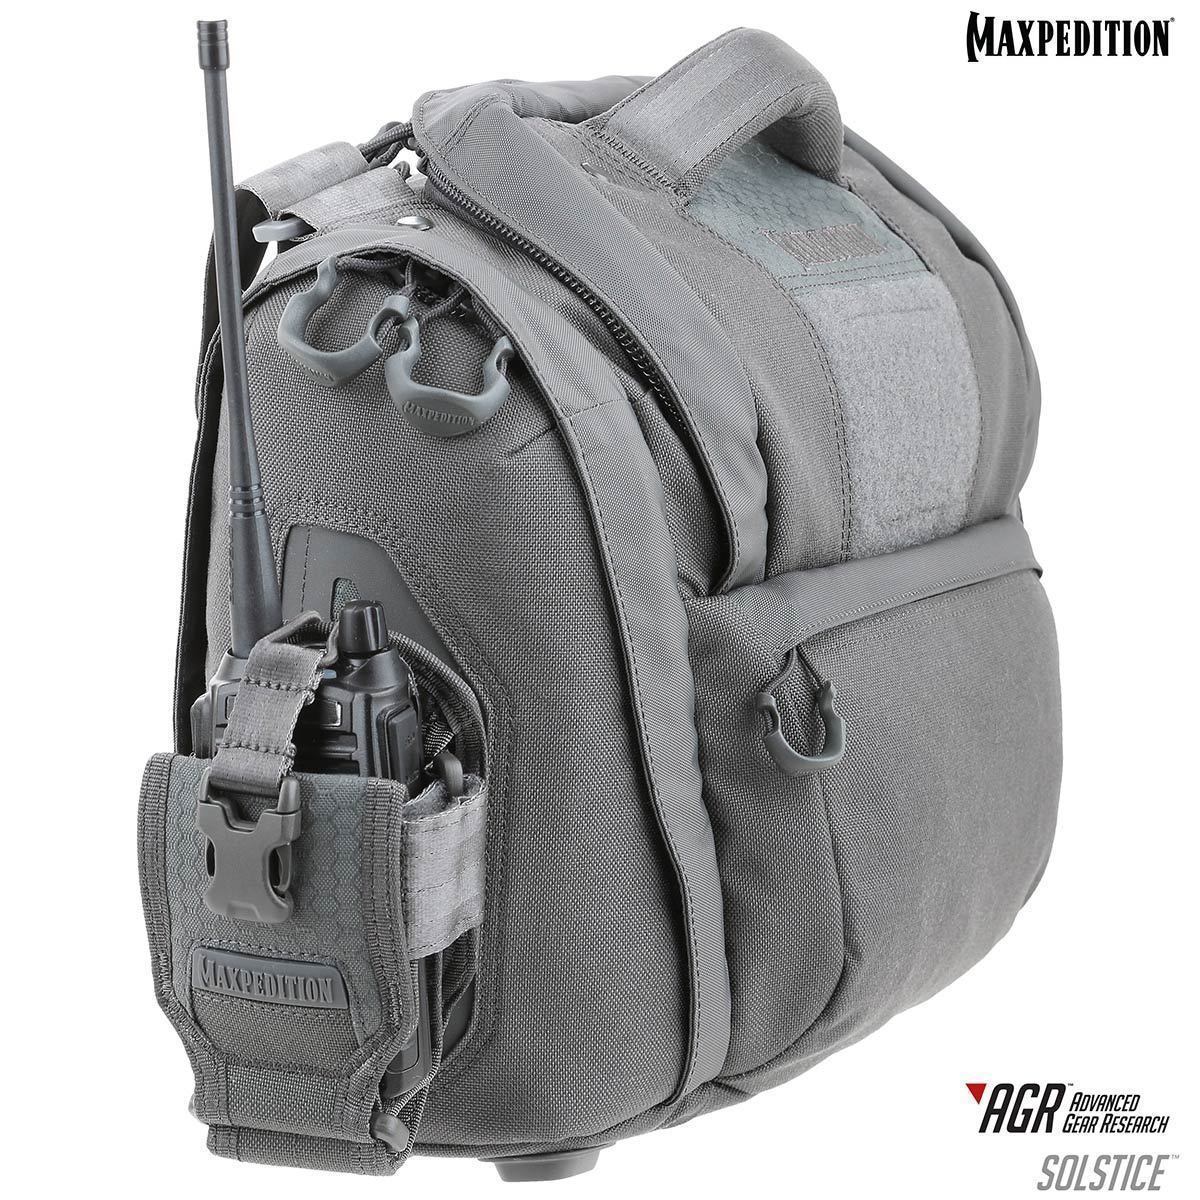 Maxpedition Solstice CCW Camera Bag 13.5L Bags, Packs and Cases Maxpedition Tactical Gear Supplier Tactical Distributors Australia